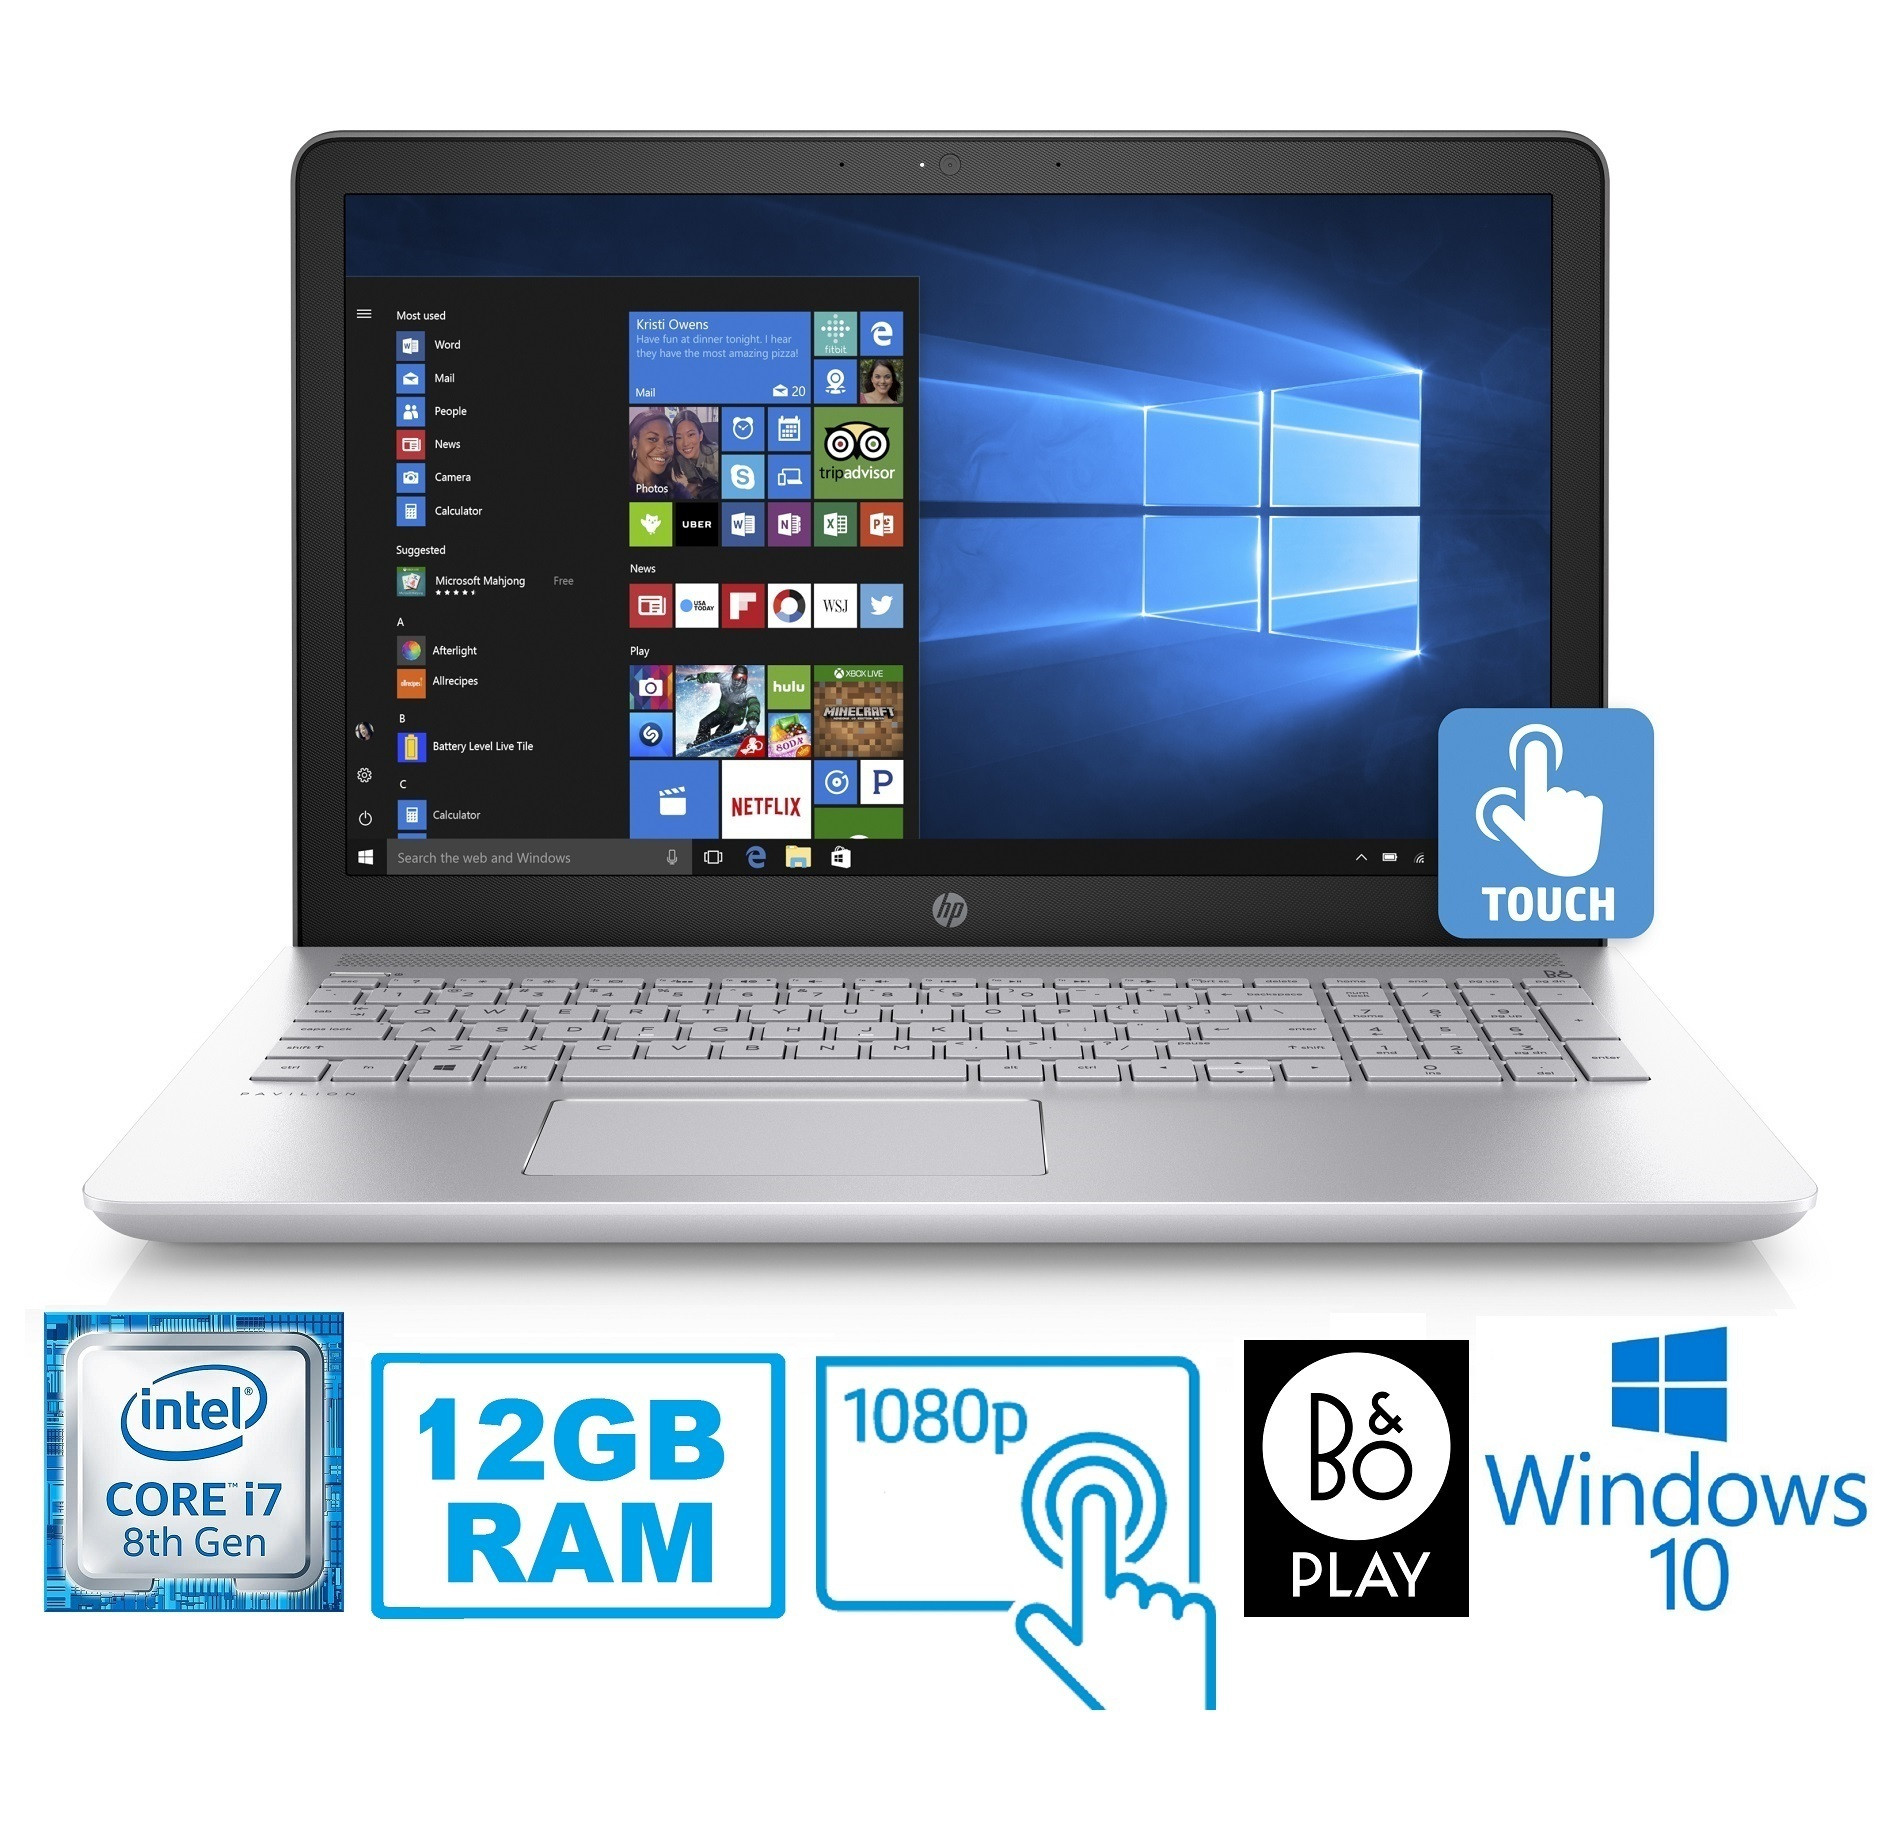 Chất lượng laptop HP core i7 có tốt không? Nên mua ở đâu?